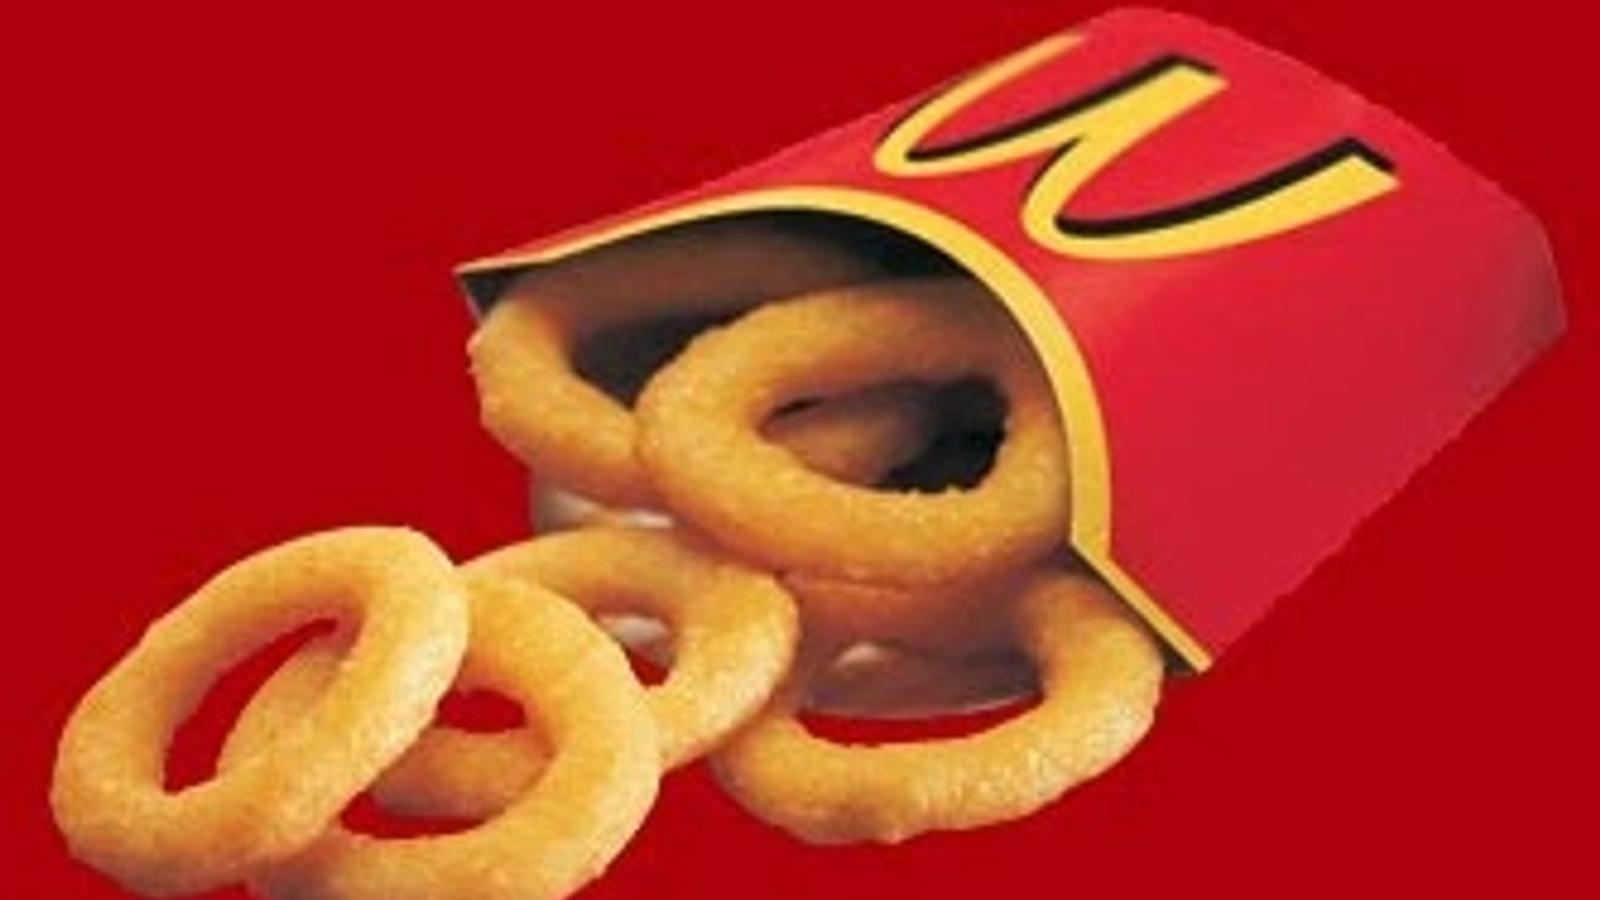 Un ancien chef explique pourquoi McDonald's n'a pas de rondelles d'oignons dans son menu.